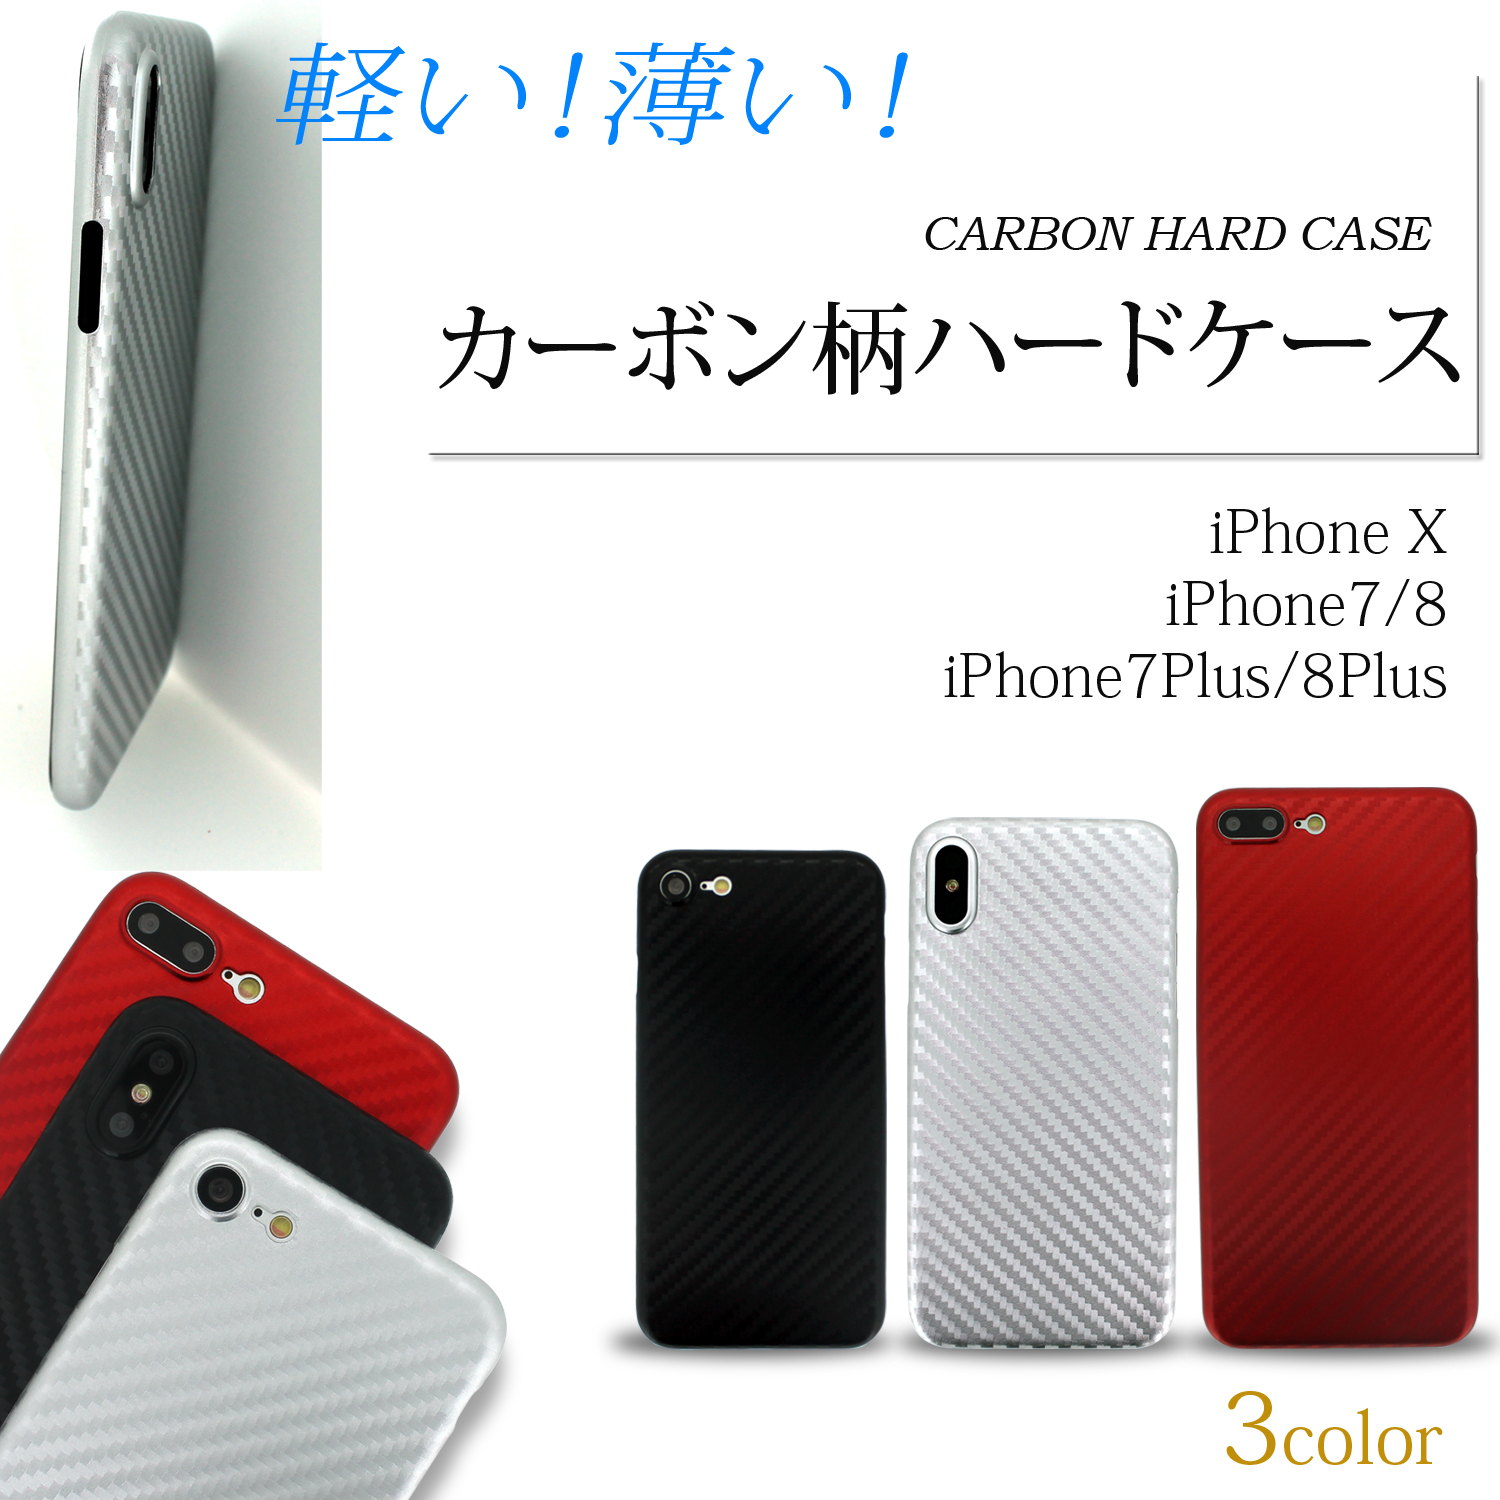 Iphone 7plus 8plus 送料無料 カーボン柄 ハードケース Type B 軽量 薄型 保護 カーボン クール かっこいい スタイリッシュ Iphone アイフォン アップル Apple ホワイトナッツ